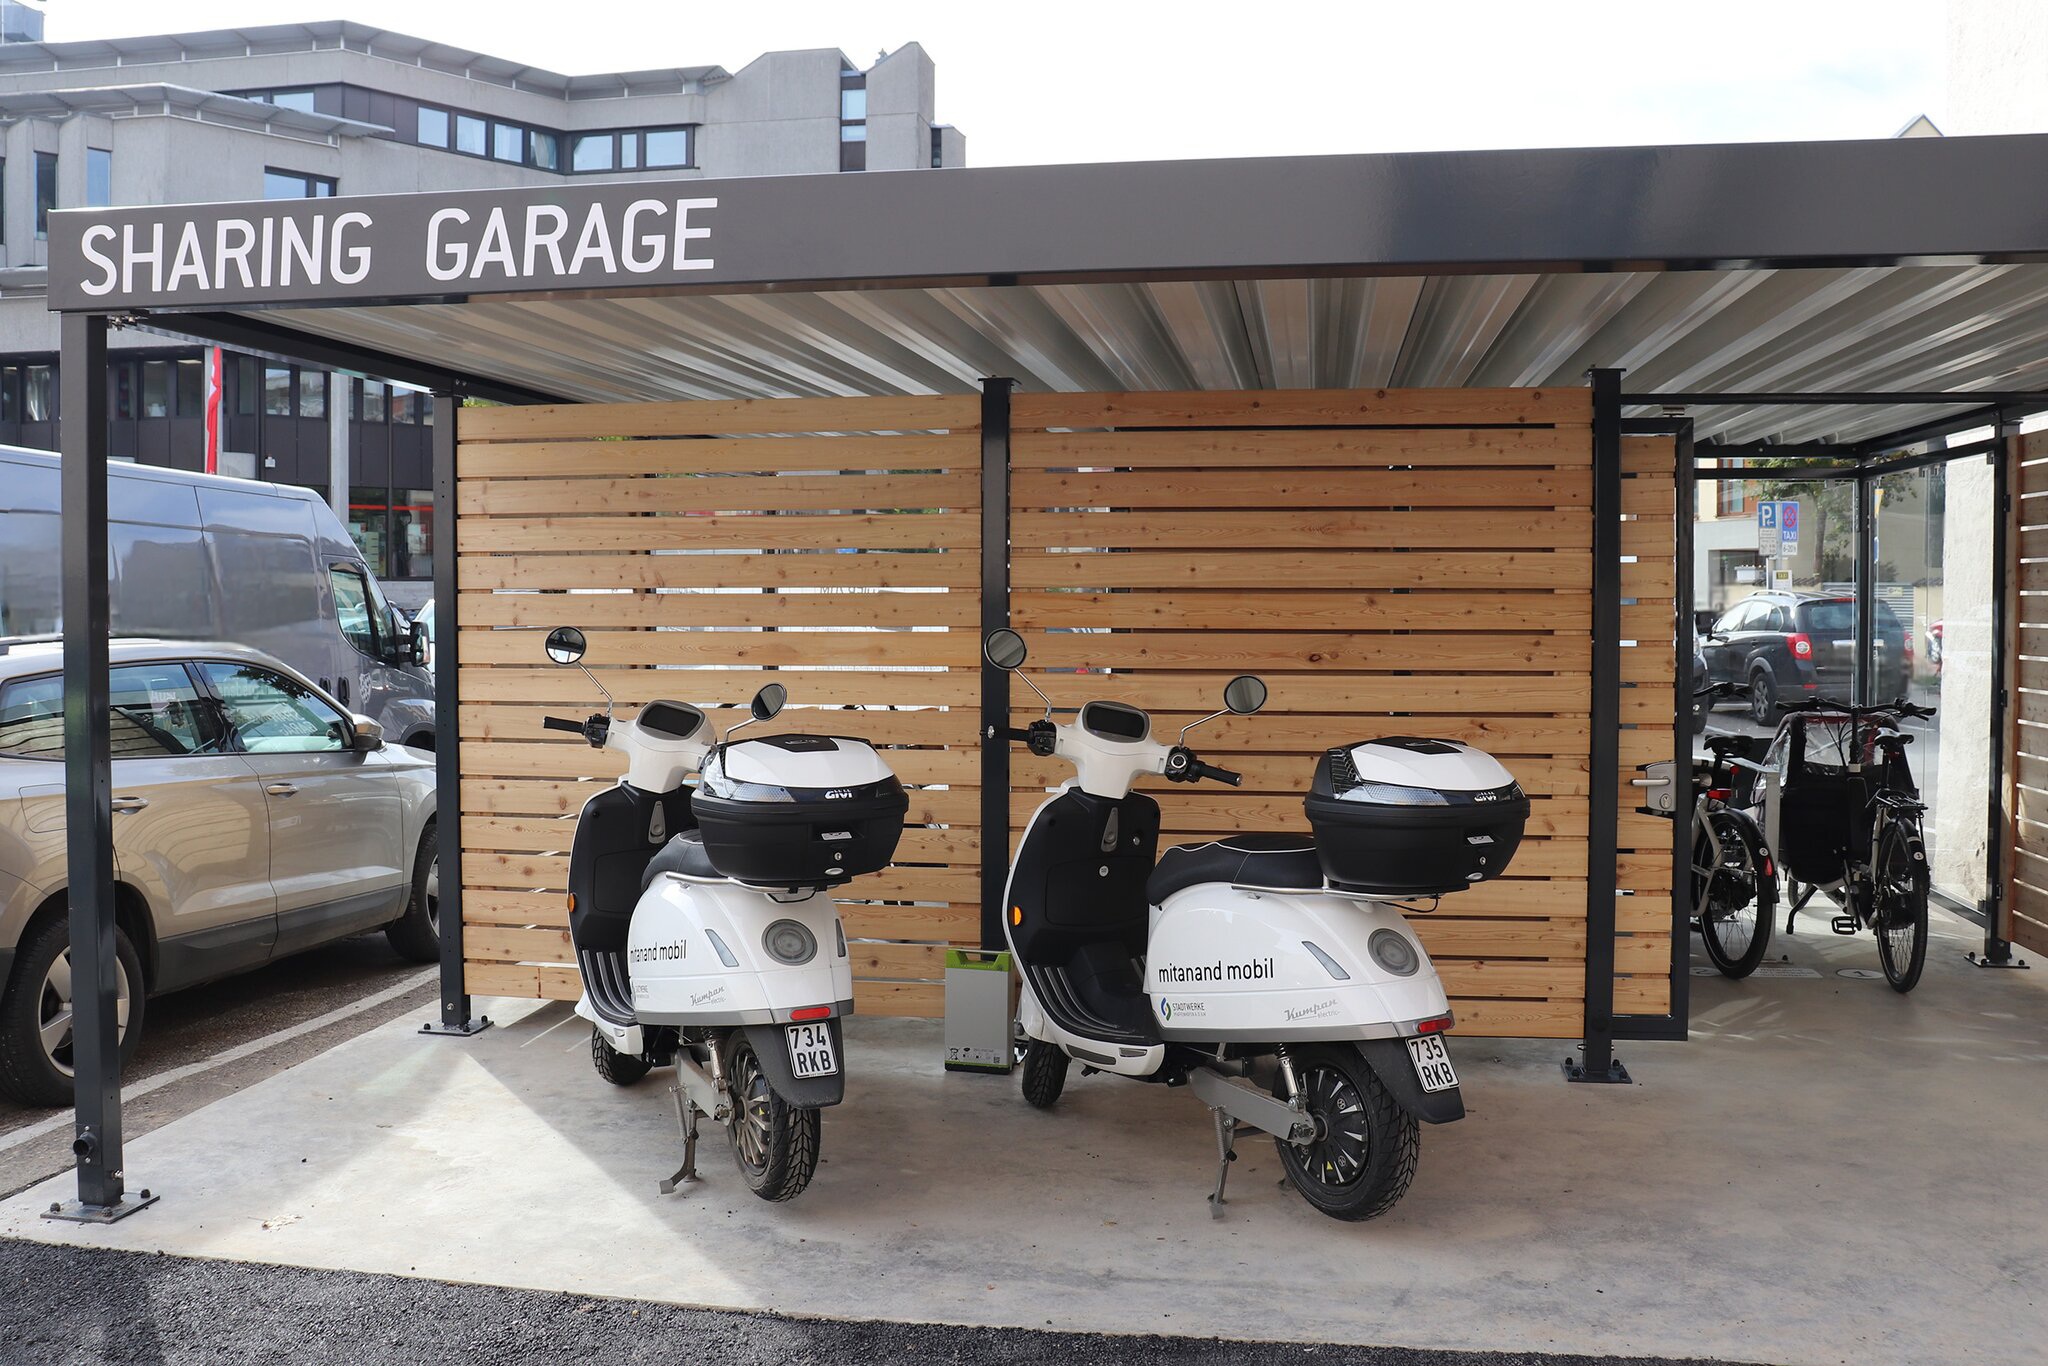 In unserer Sharing-Garage in Pfaffenhofen werden sowohl E-Bikes und Lastenräder als auch E-Roller zur Verfügung gestellt.